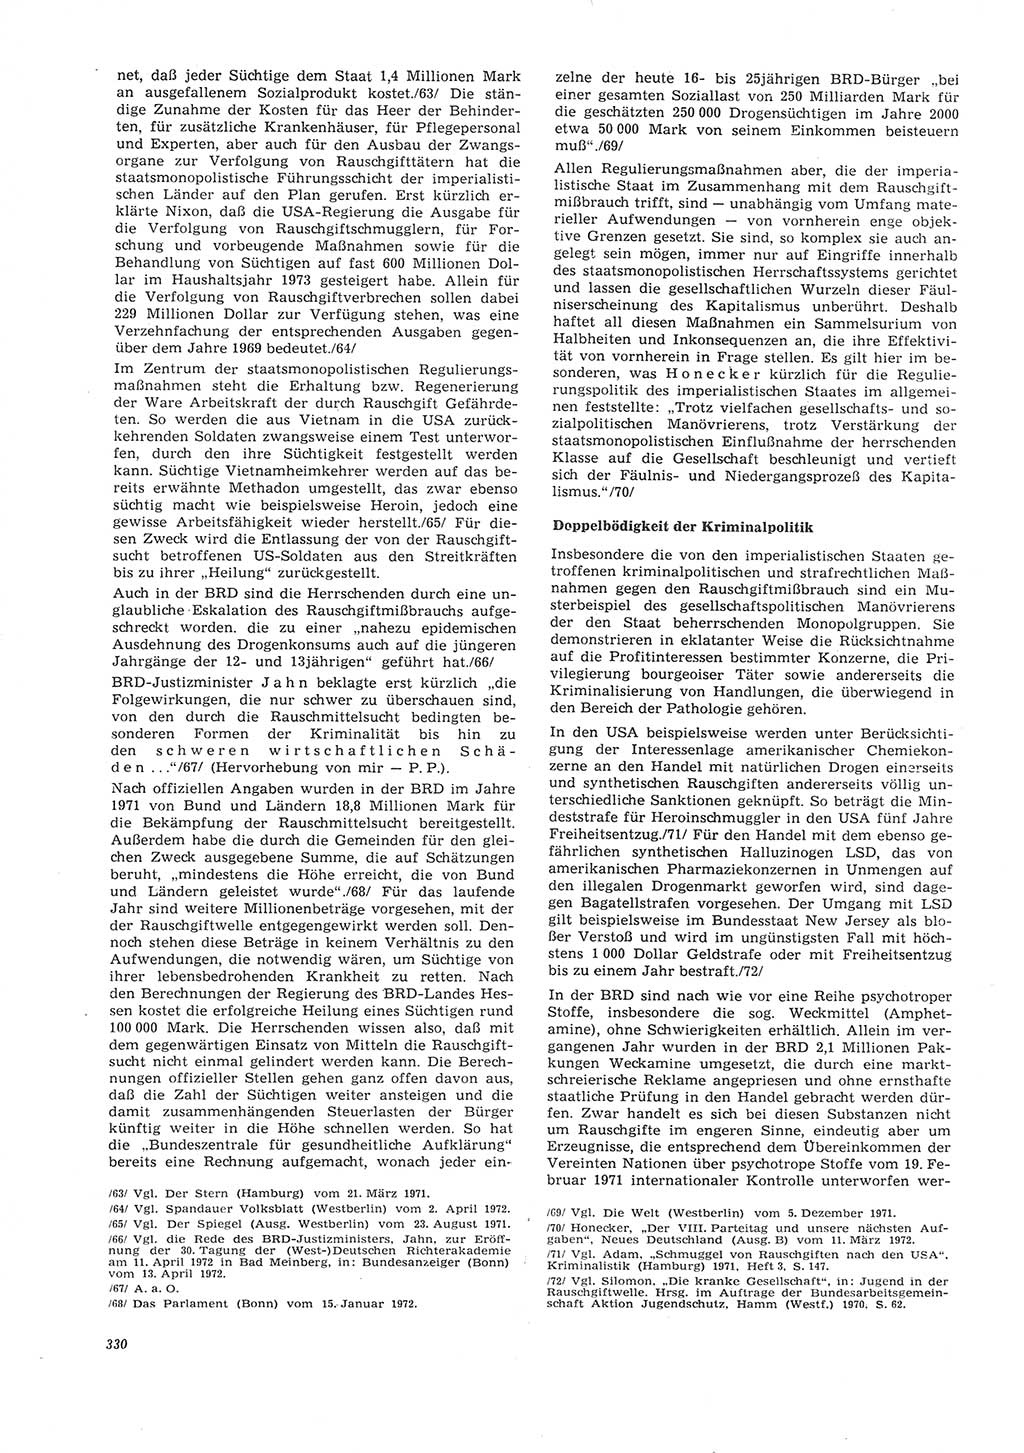 Neue Justiz (NJ), Zeitschrift für Recht und Rechtswissenschaft [Deutsche Demokratische Republik (DDR)], 26. Jahrgang 1972, Seite 330 (NJ DDR 1972, S. 330)